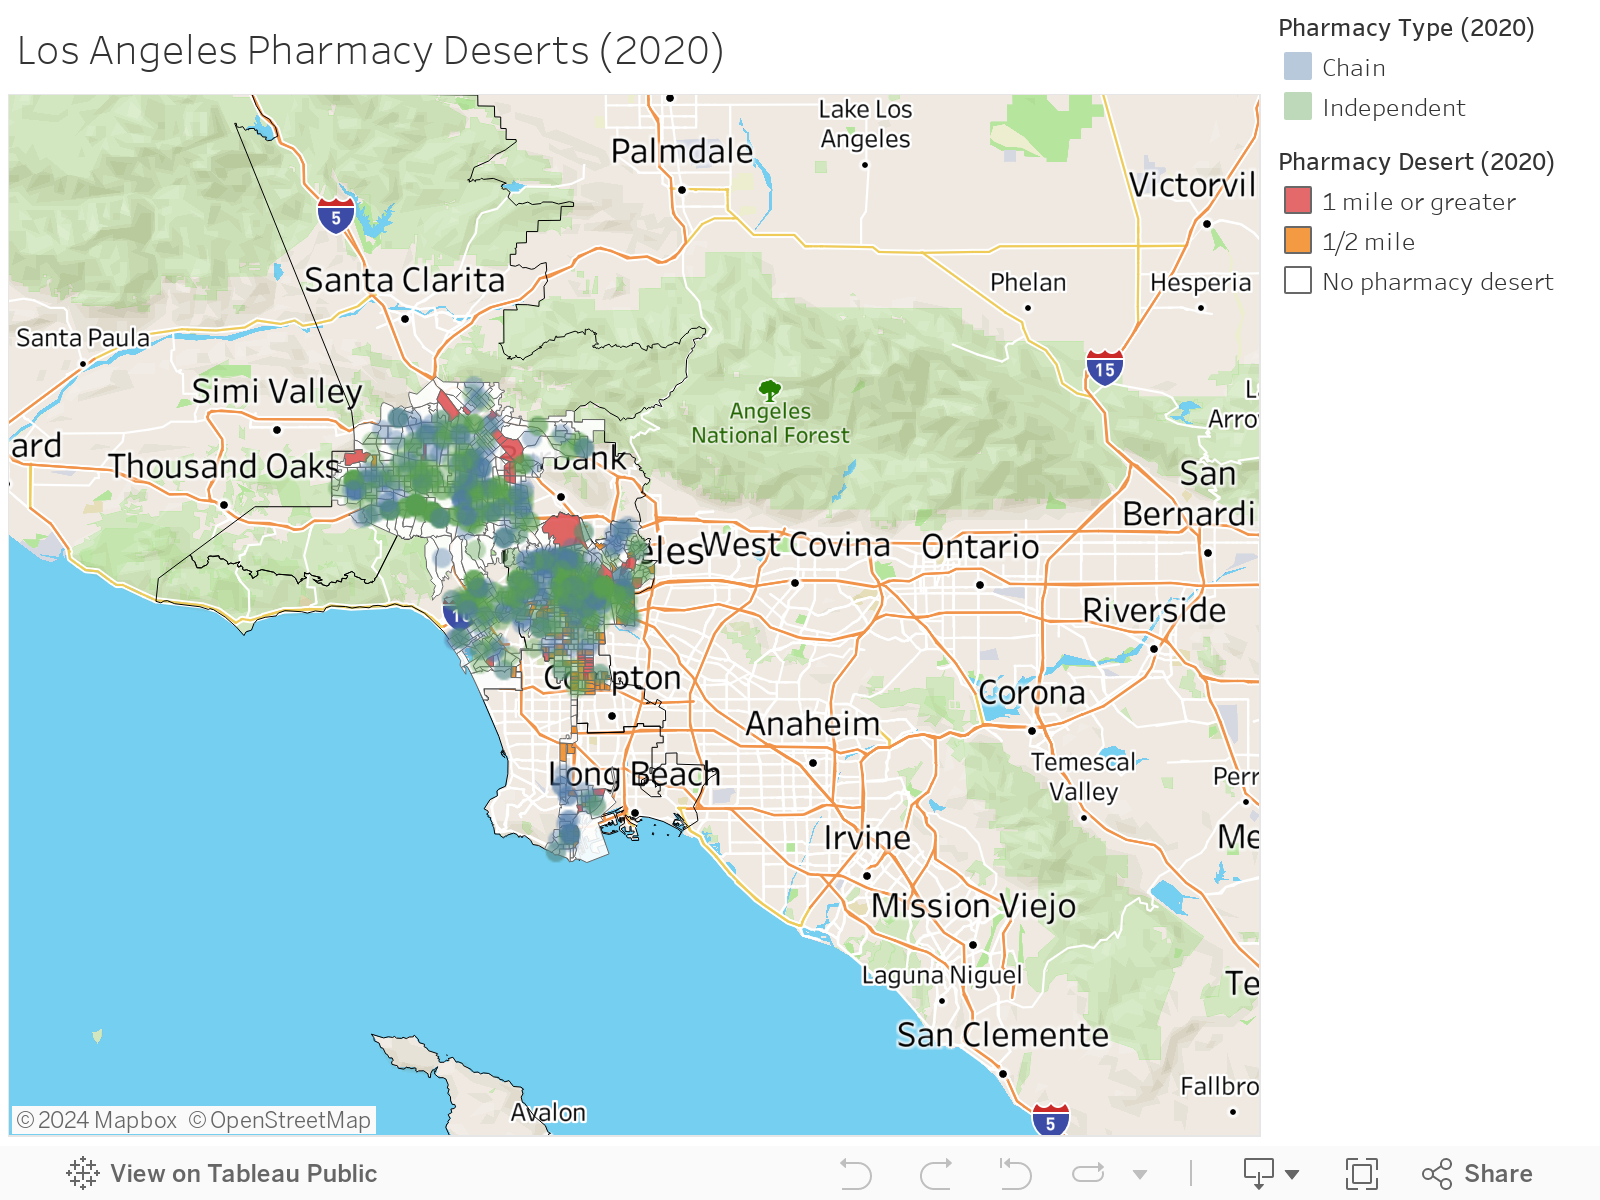 Los Angeles Pharmacy Deserts (2020) 